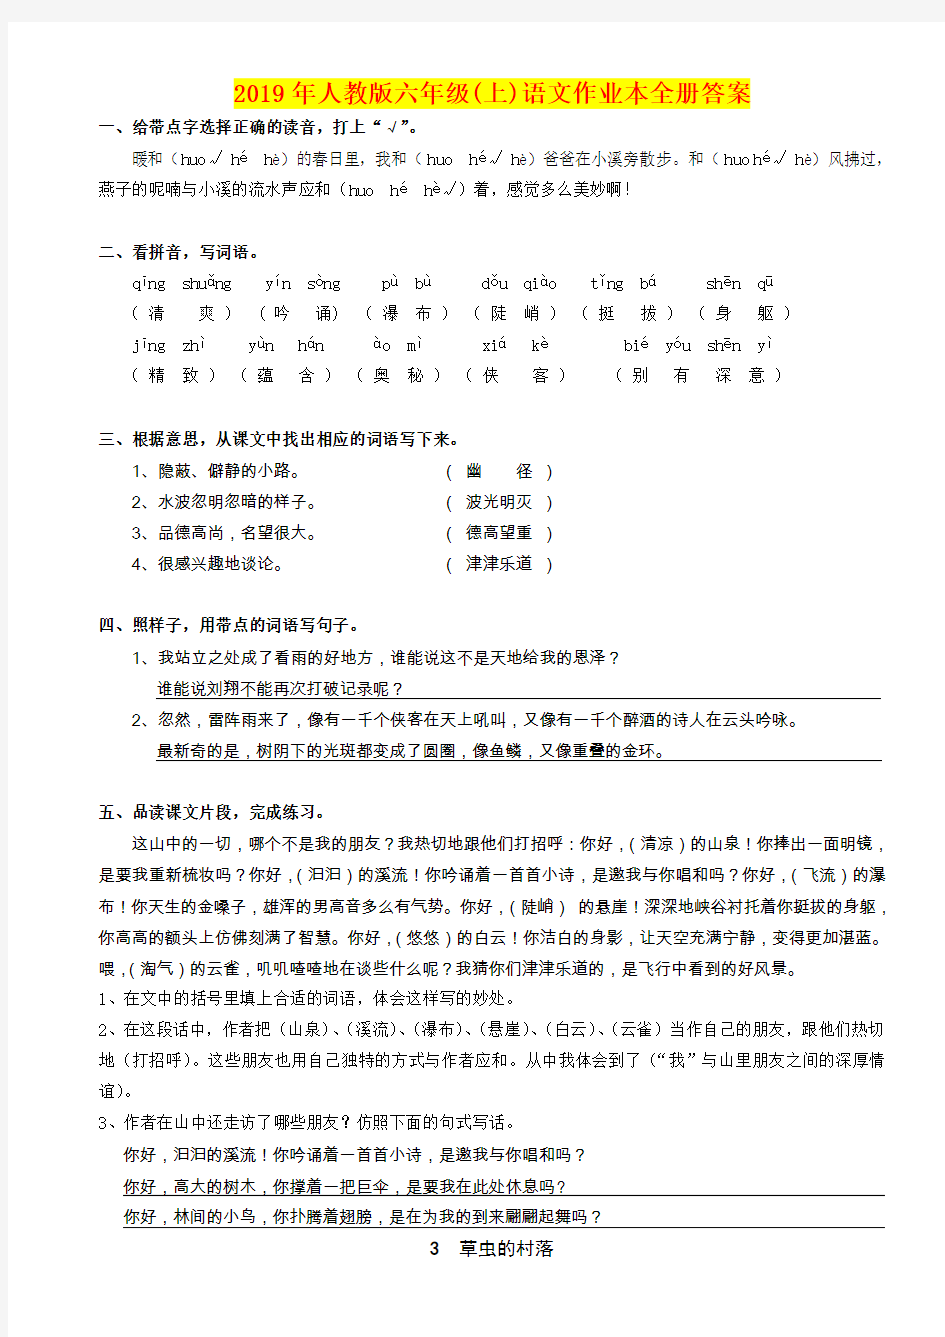 2019年人教版六年级(上)语文作业本全册答案